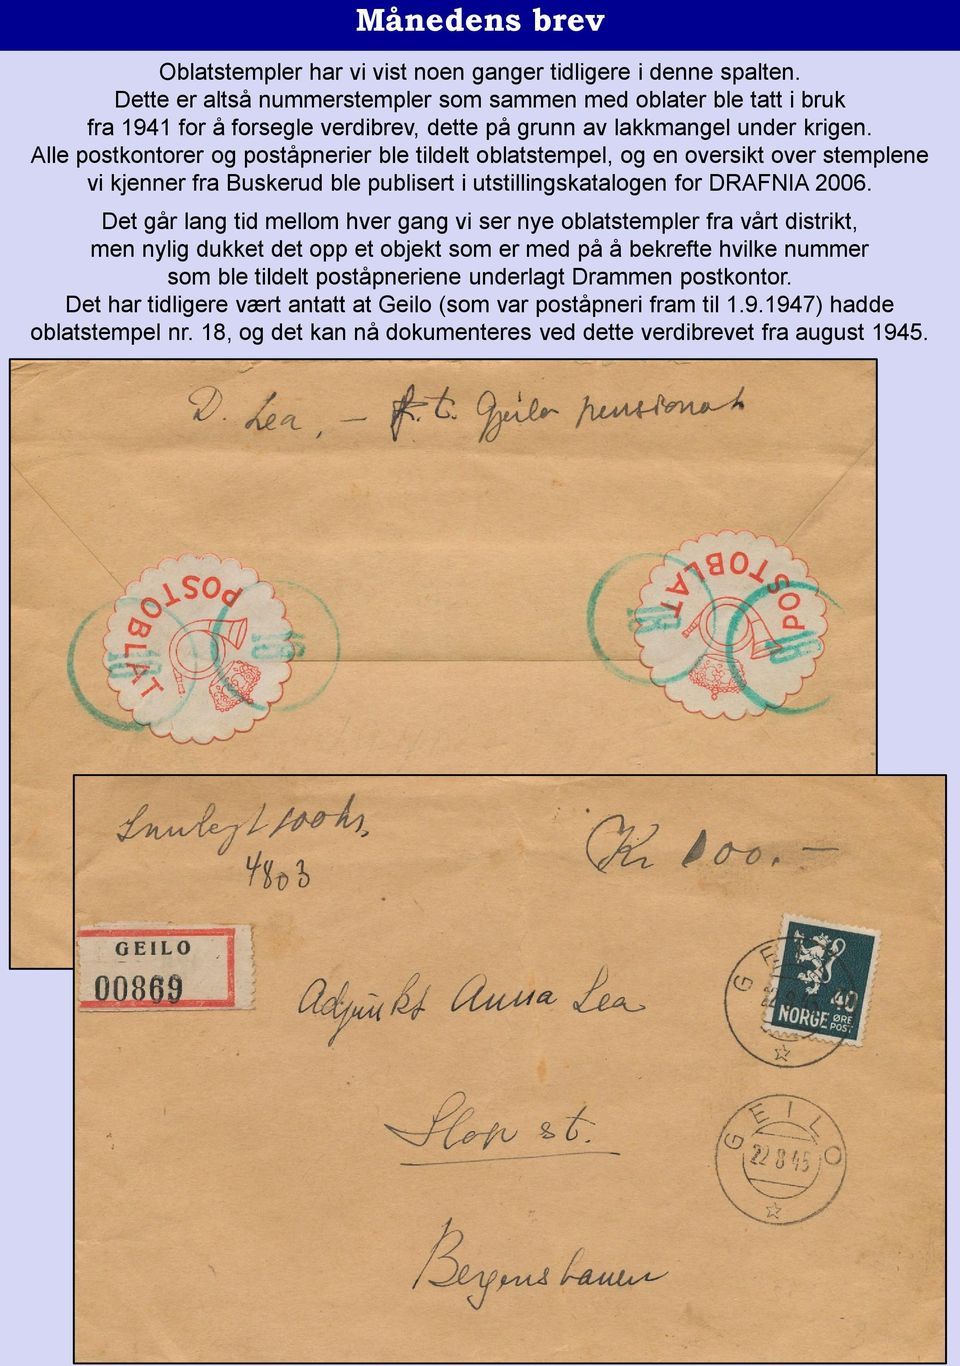 Alle postkontorer og poståpnerier ble tildelt oblatstempel, og en oversikt over stemplene vi kjenner fra Buskerud ble publisert i utstillingskatalogen for DRAFNIA 2006.